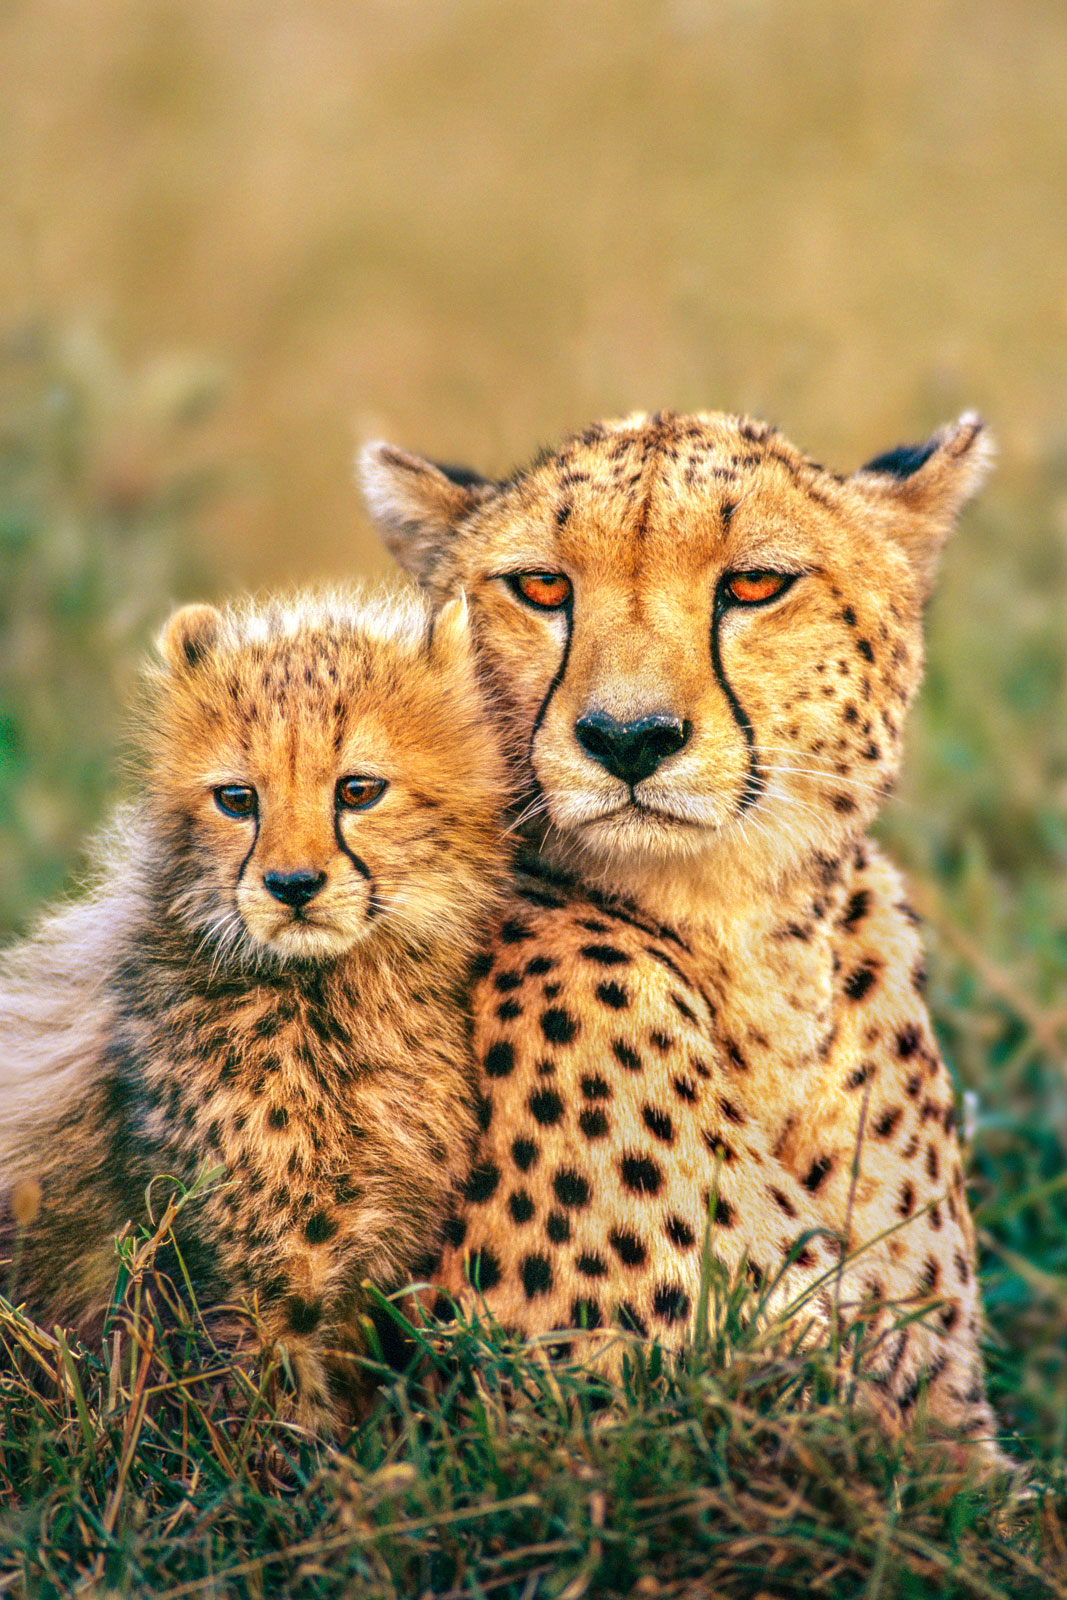 Cheetah and cub, Masai Mara Reserve, Kenya